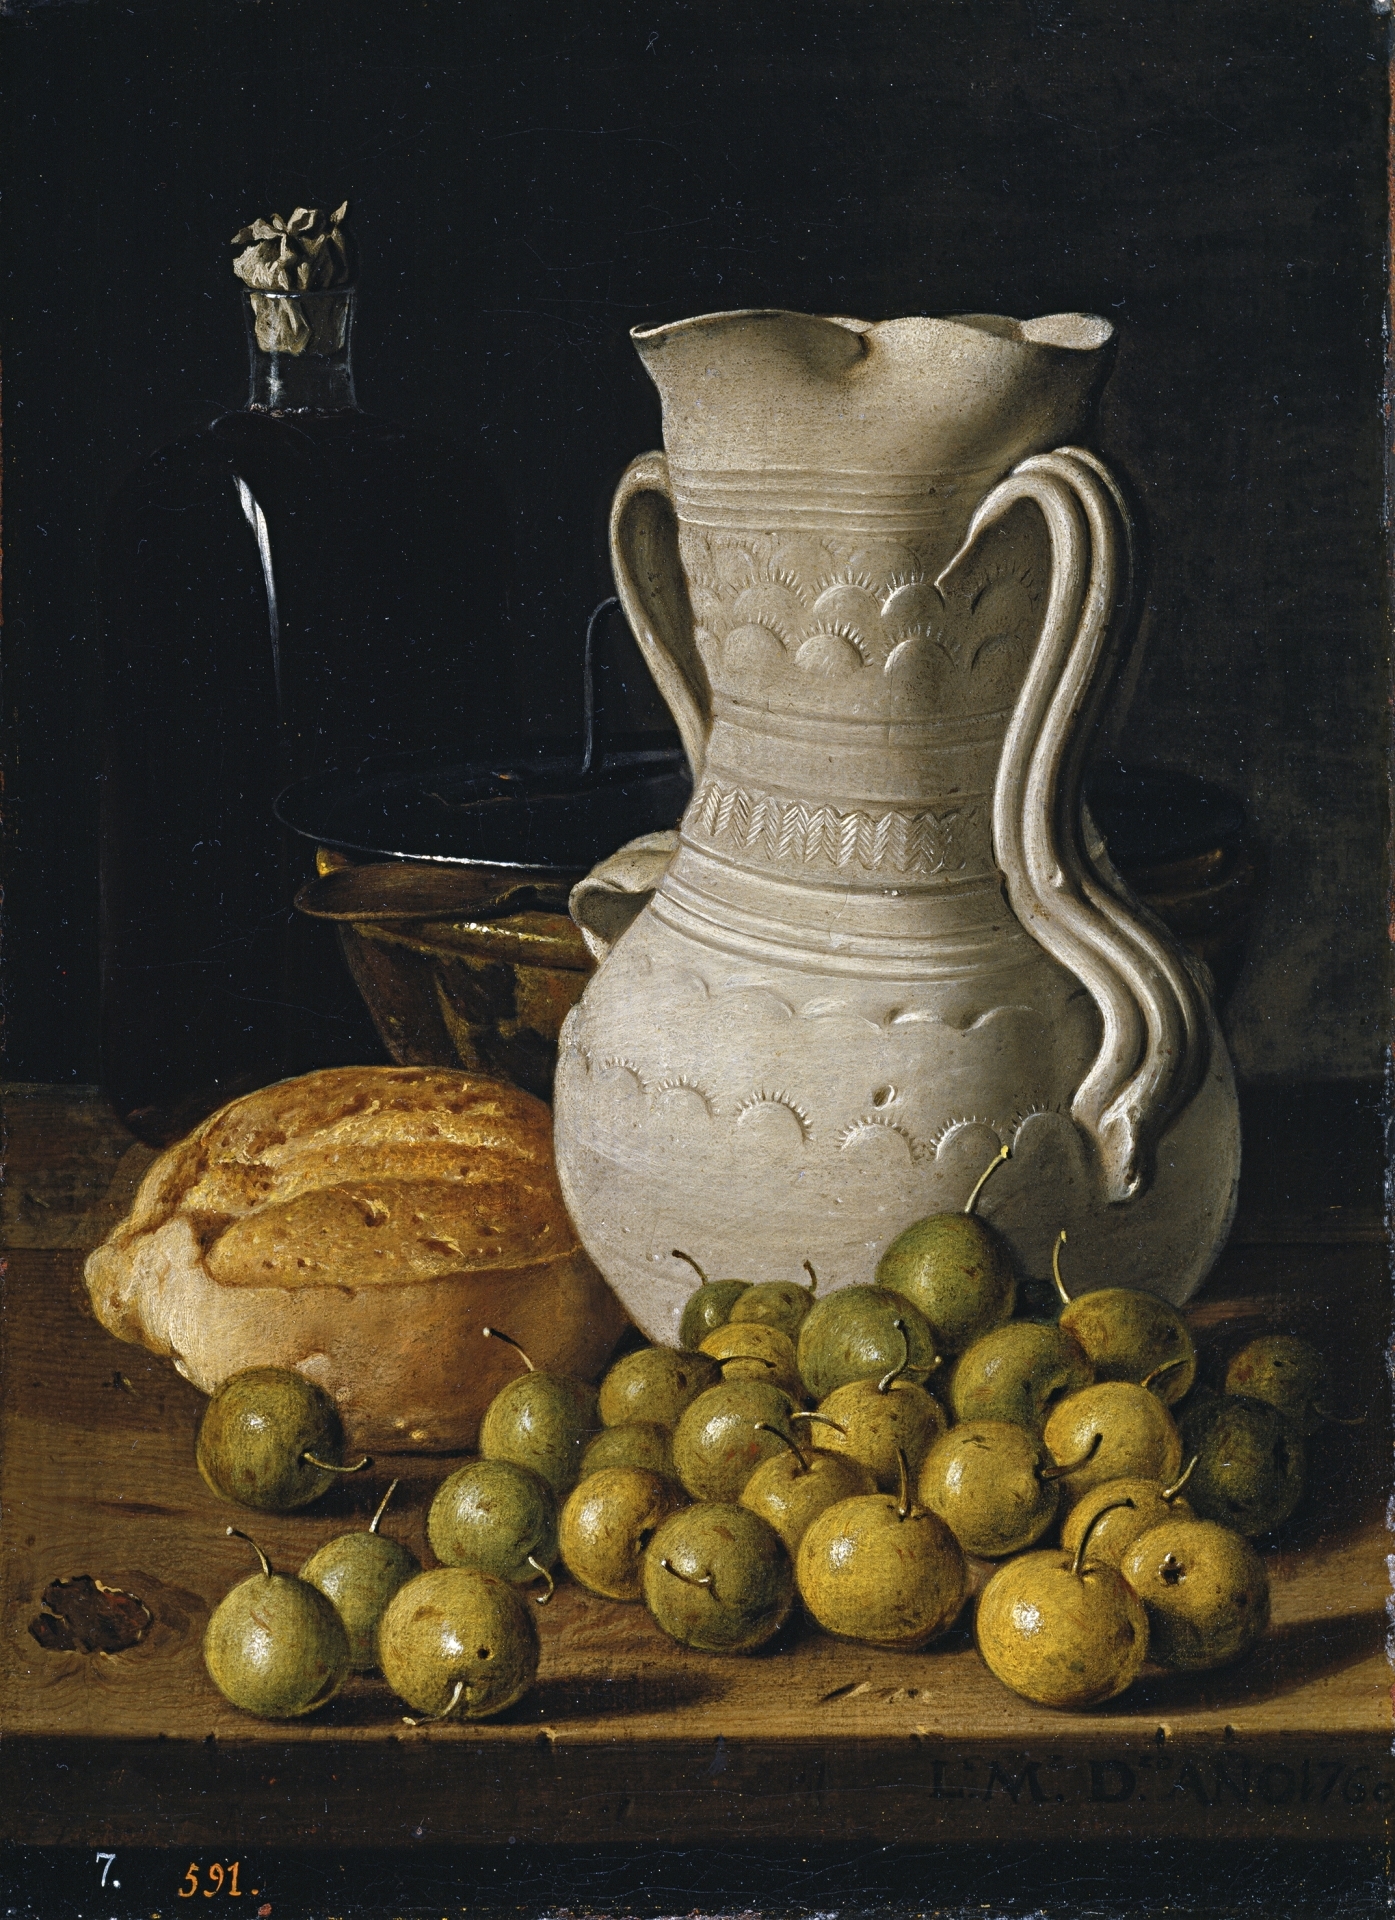 Luis Egidio, Meléndez - Bodegón con peritas, pan, alcarraza, cuenco y frasca - 1760